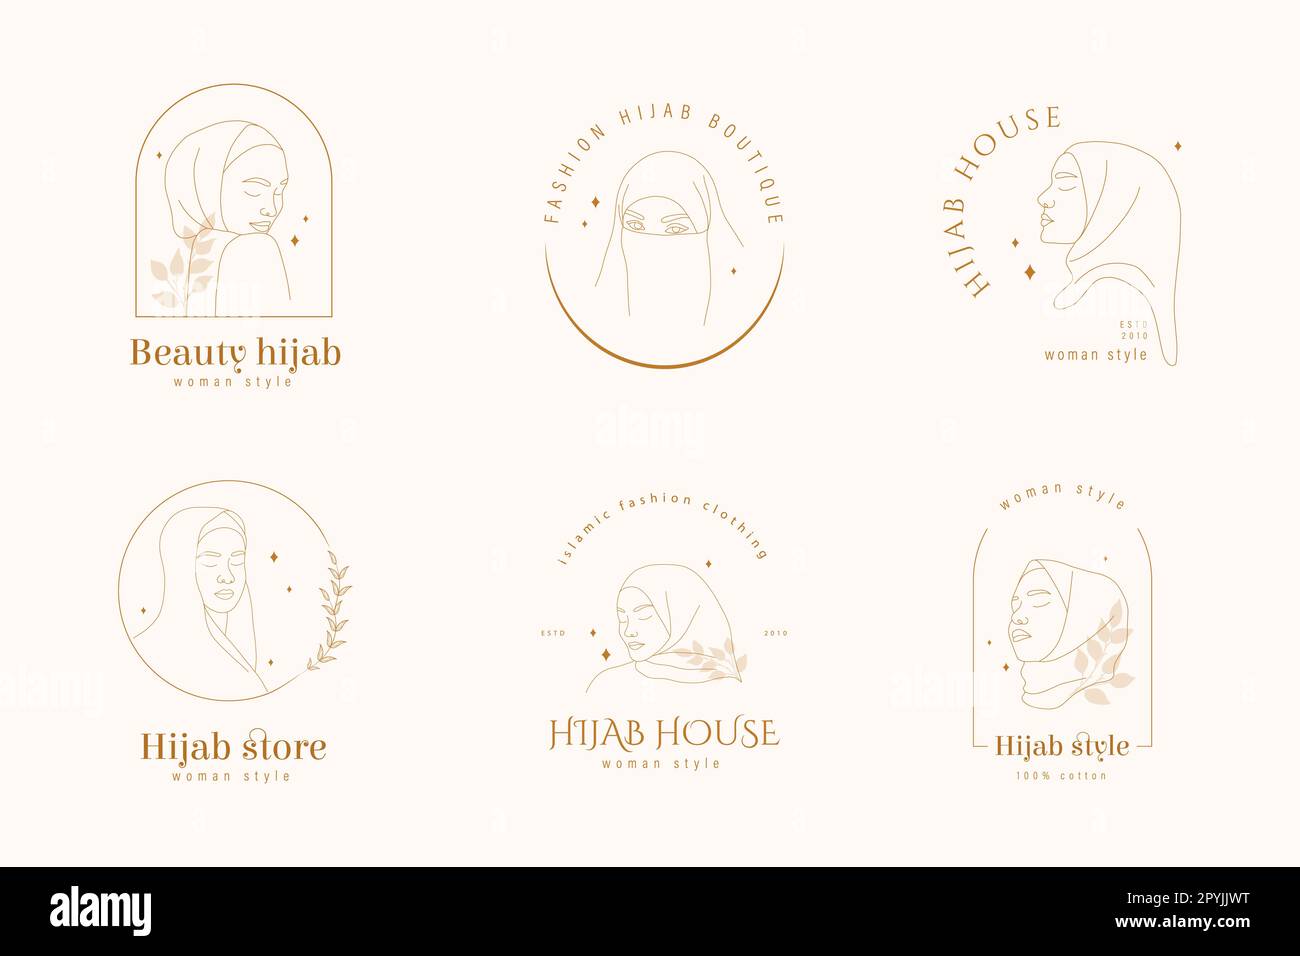 Hijab Store logo collezione. Set di logotipi per boutique headdress o negozio musulmano. Donna araba astratta con occhi chiusi. Illustrazione vettoriale nella Illustrazione Vettoriale